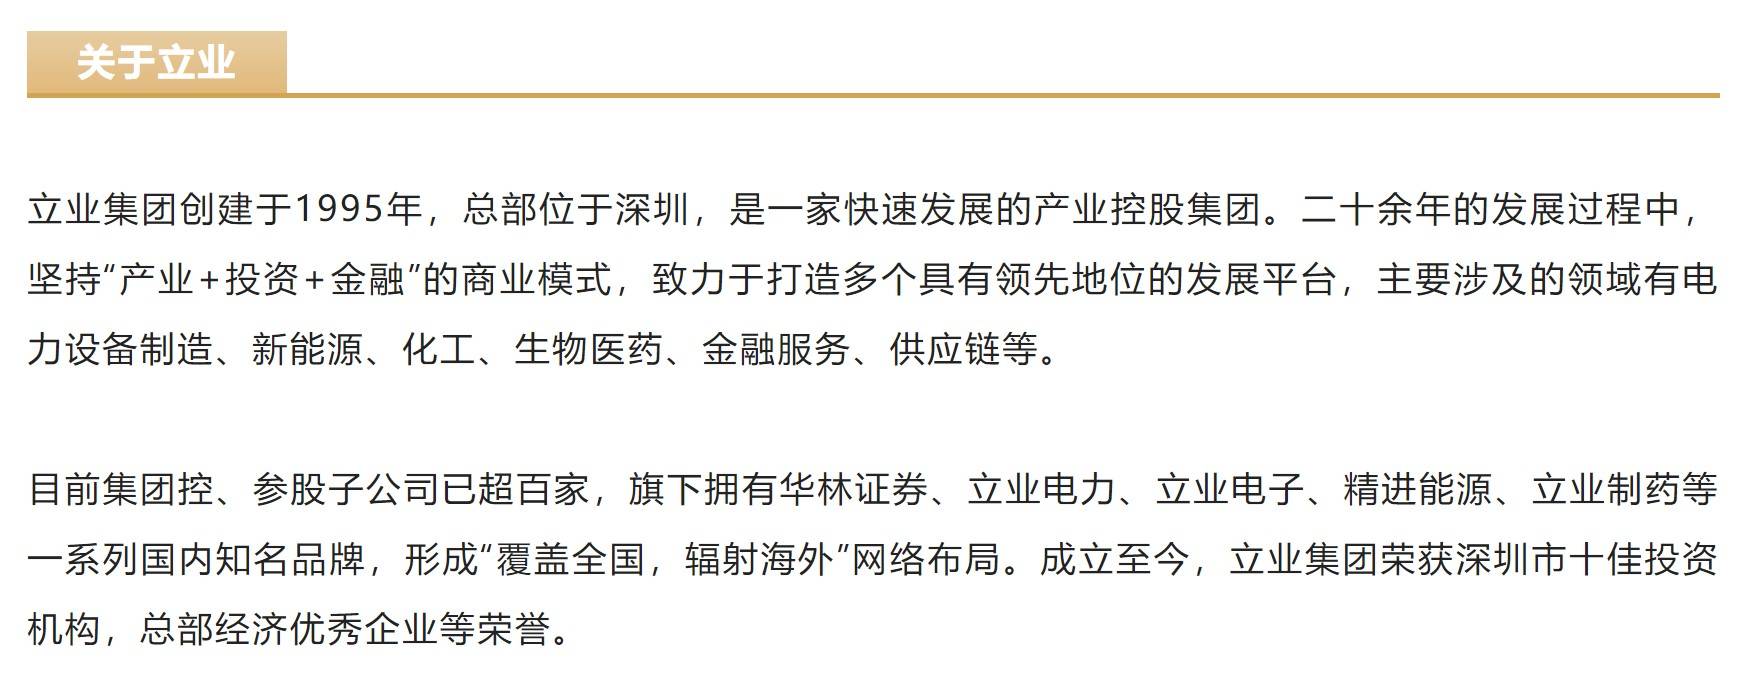 深圳市立业集团新版官方网站正式上线运行